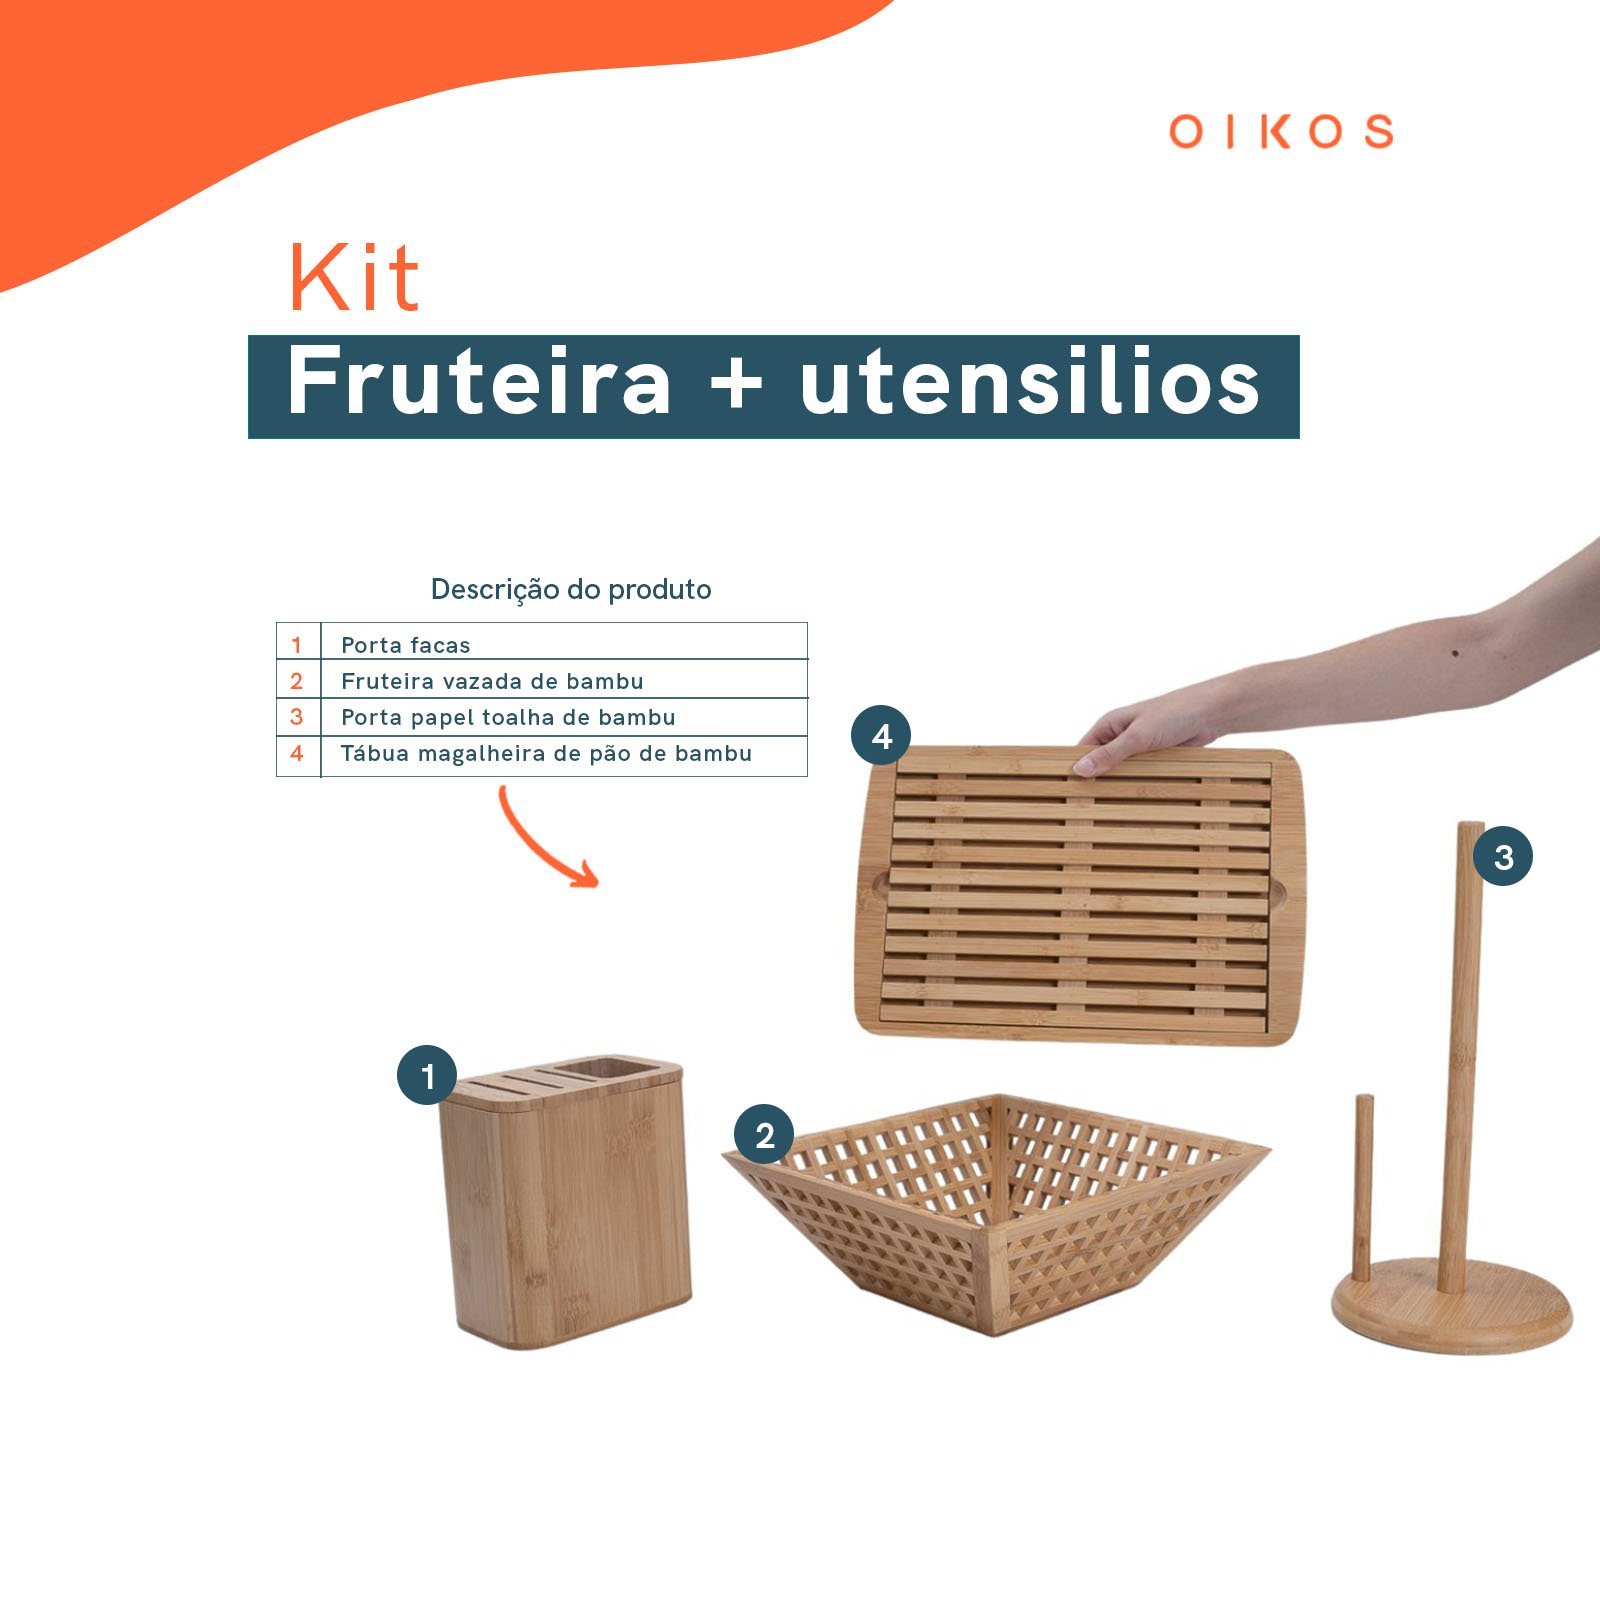 Kit com fruteira vazada, porta papel toalha, porta facas e tábua migalheira de pão de bambu - Oikos - 2